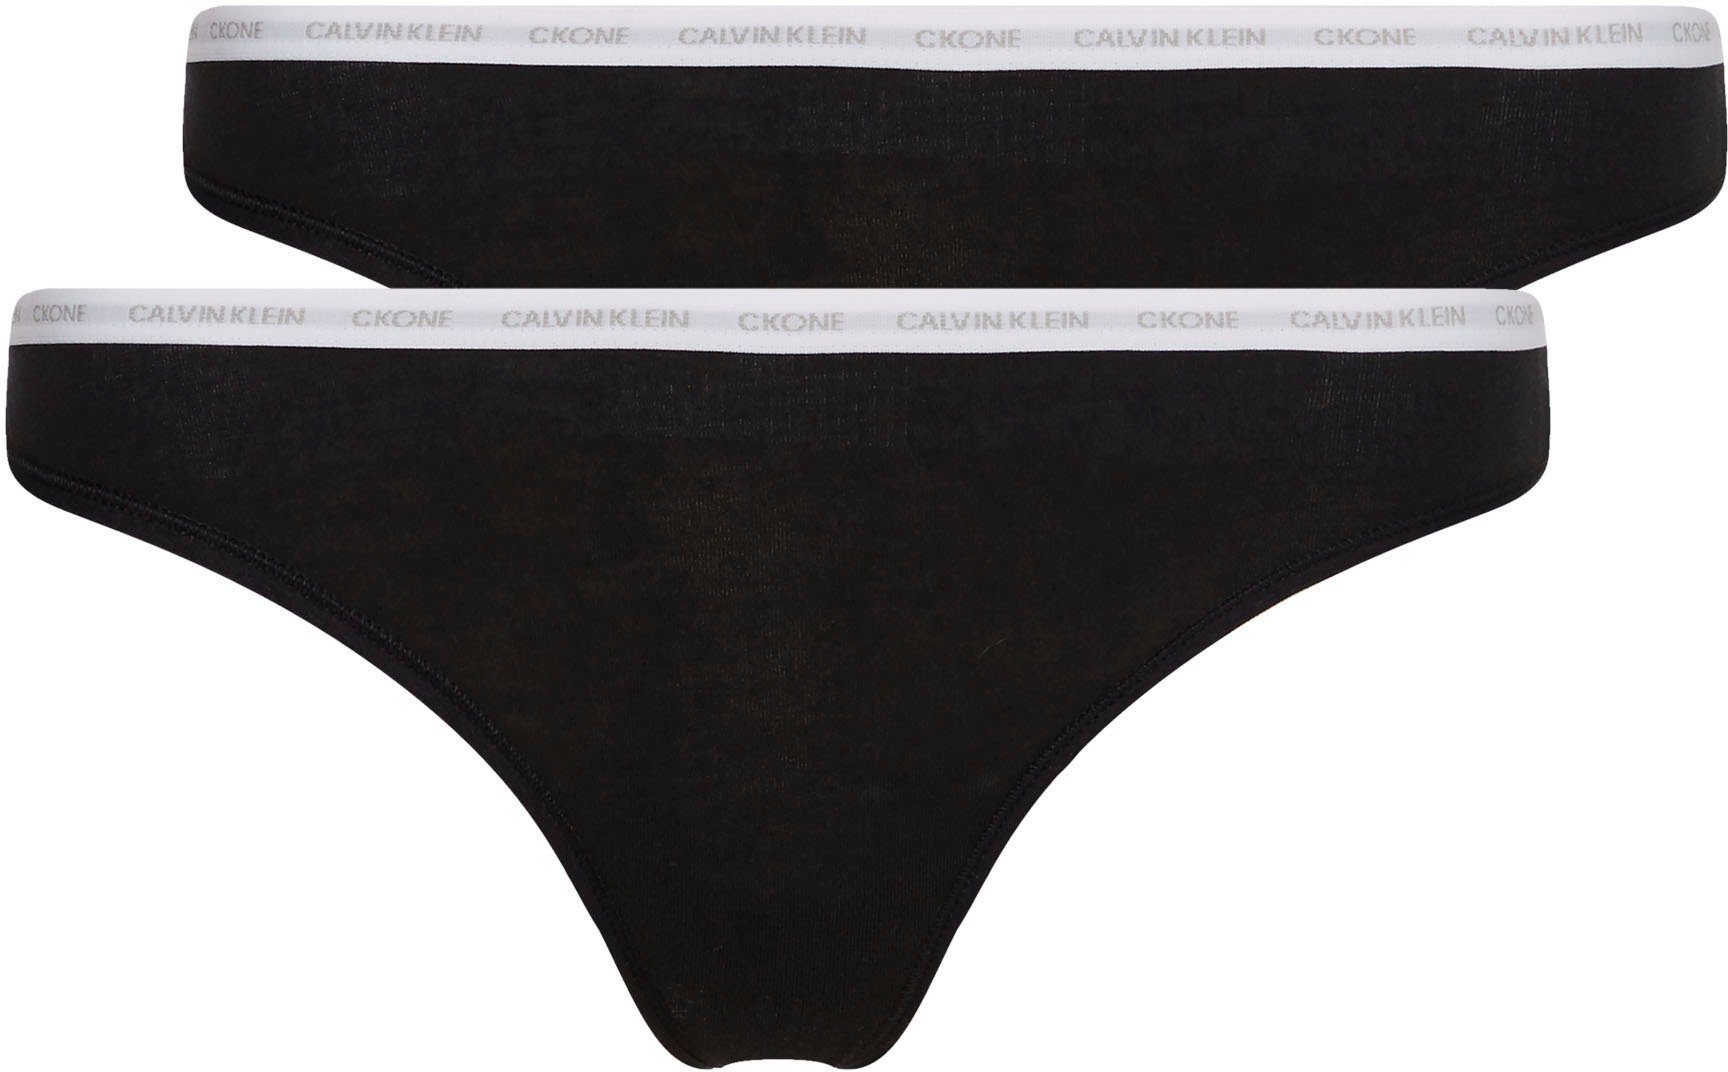 ONE Klein CK mit Calvin schwarz Underwear Logobündchen T-String